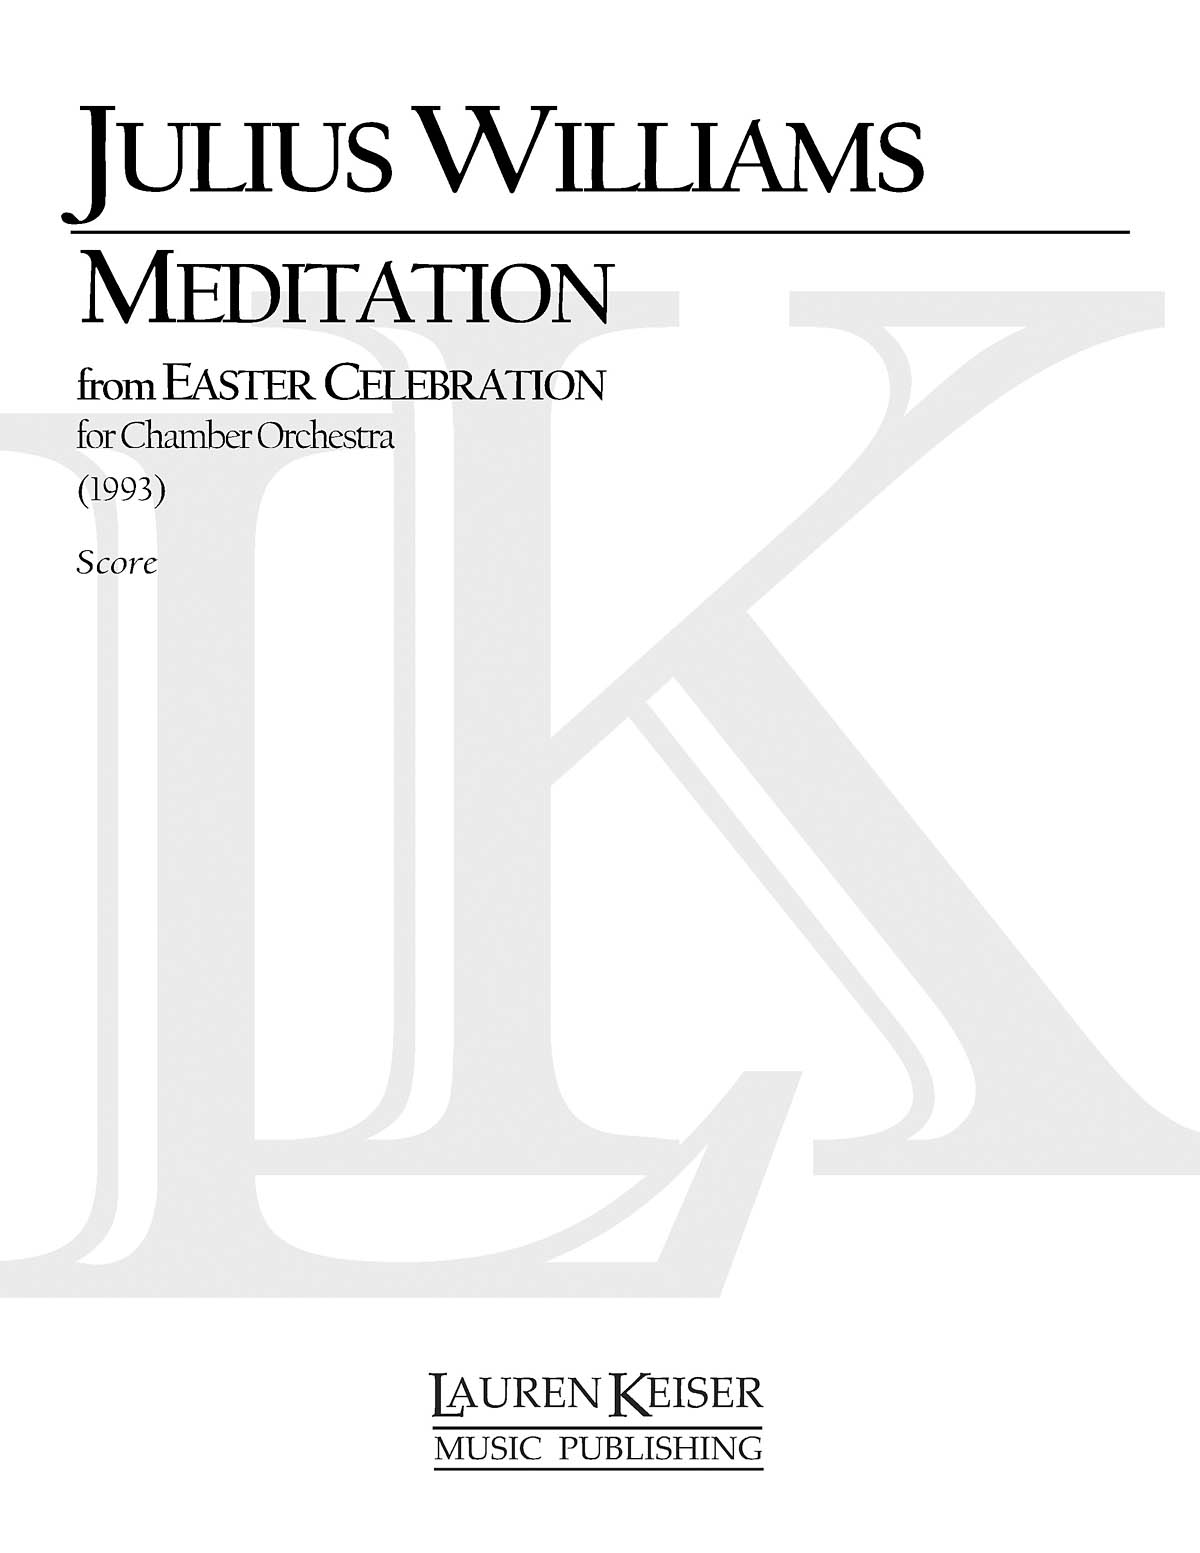 Meditation from Easter Celebration